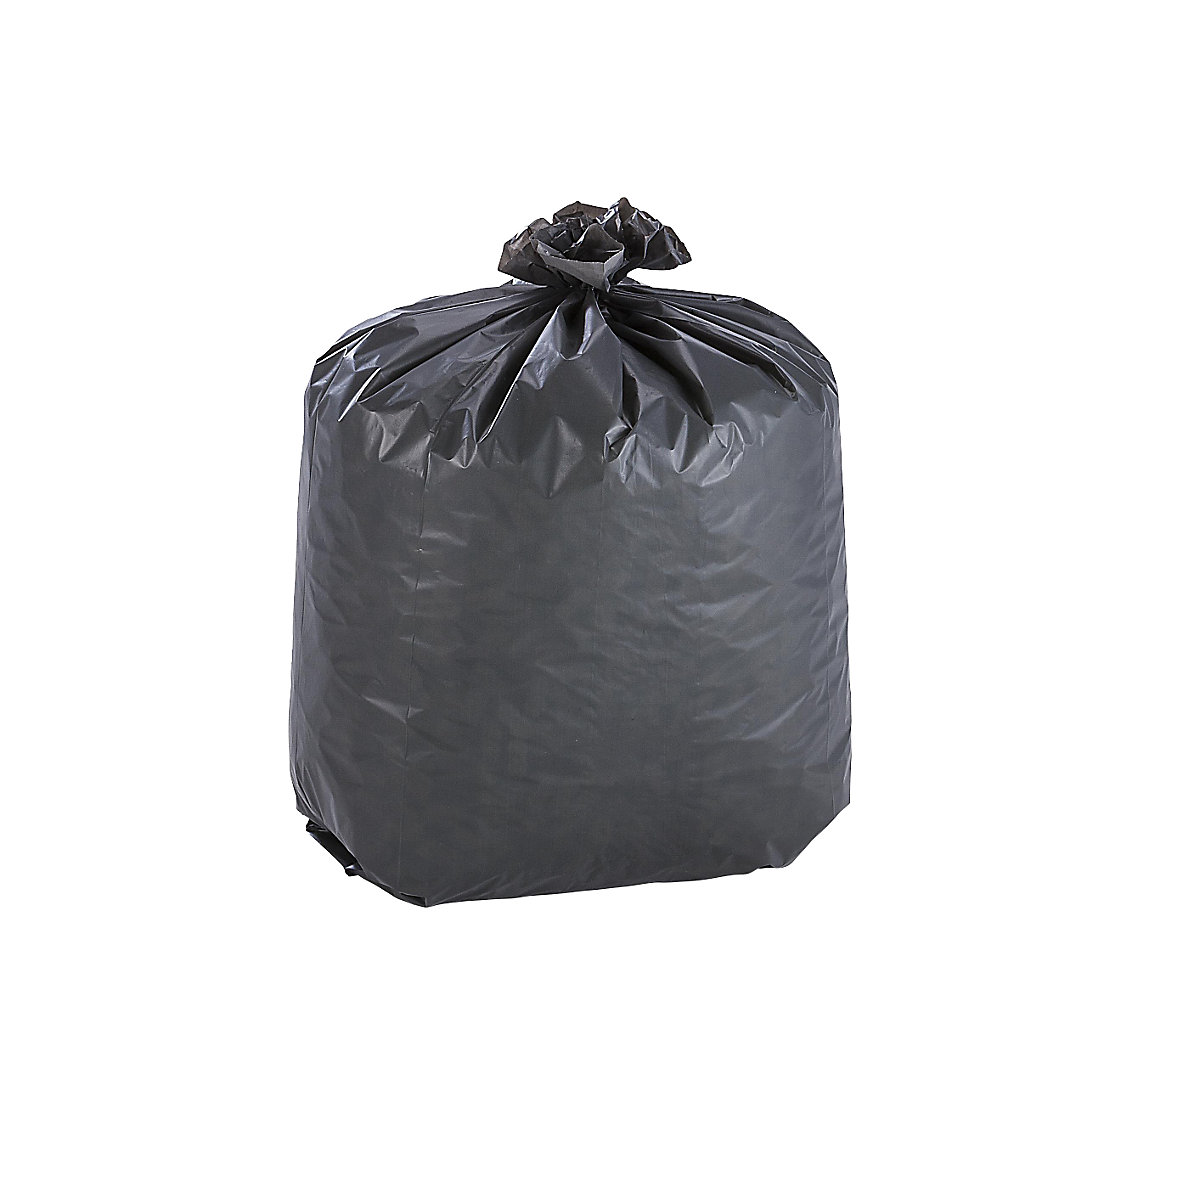 Rubbish bin bags, LDPE